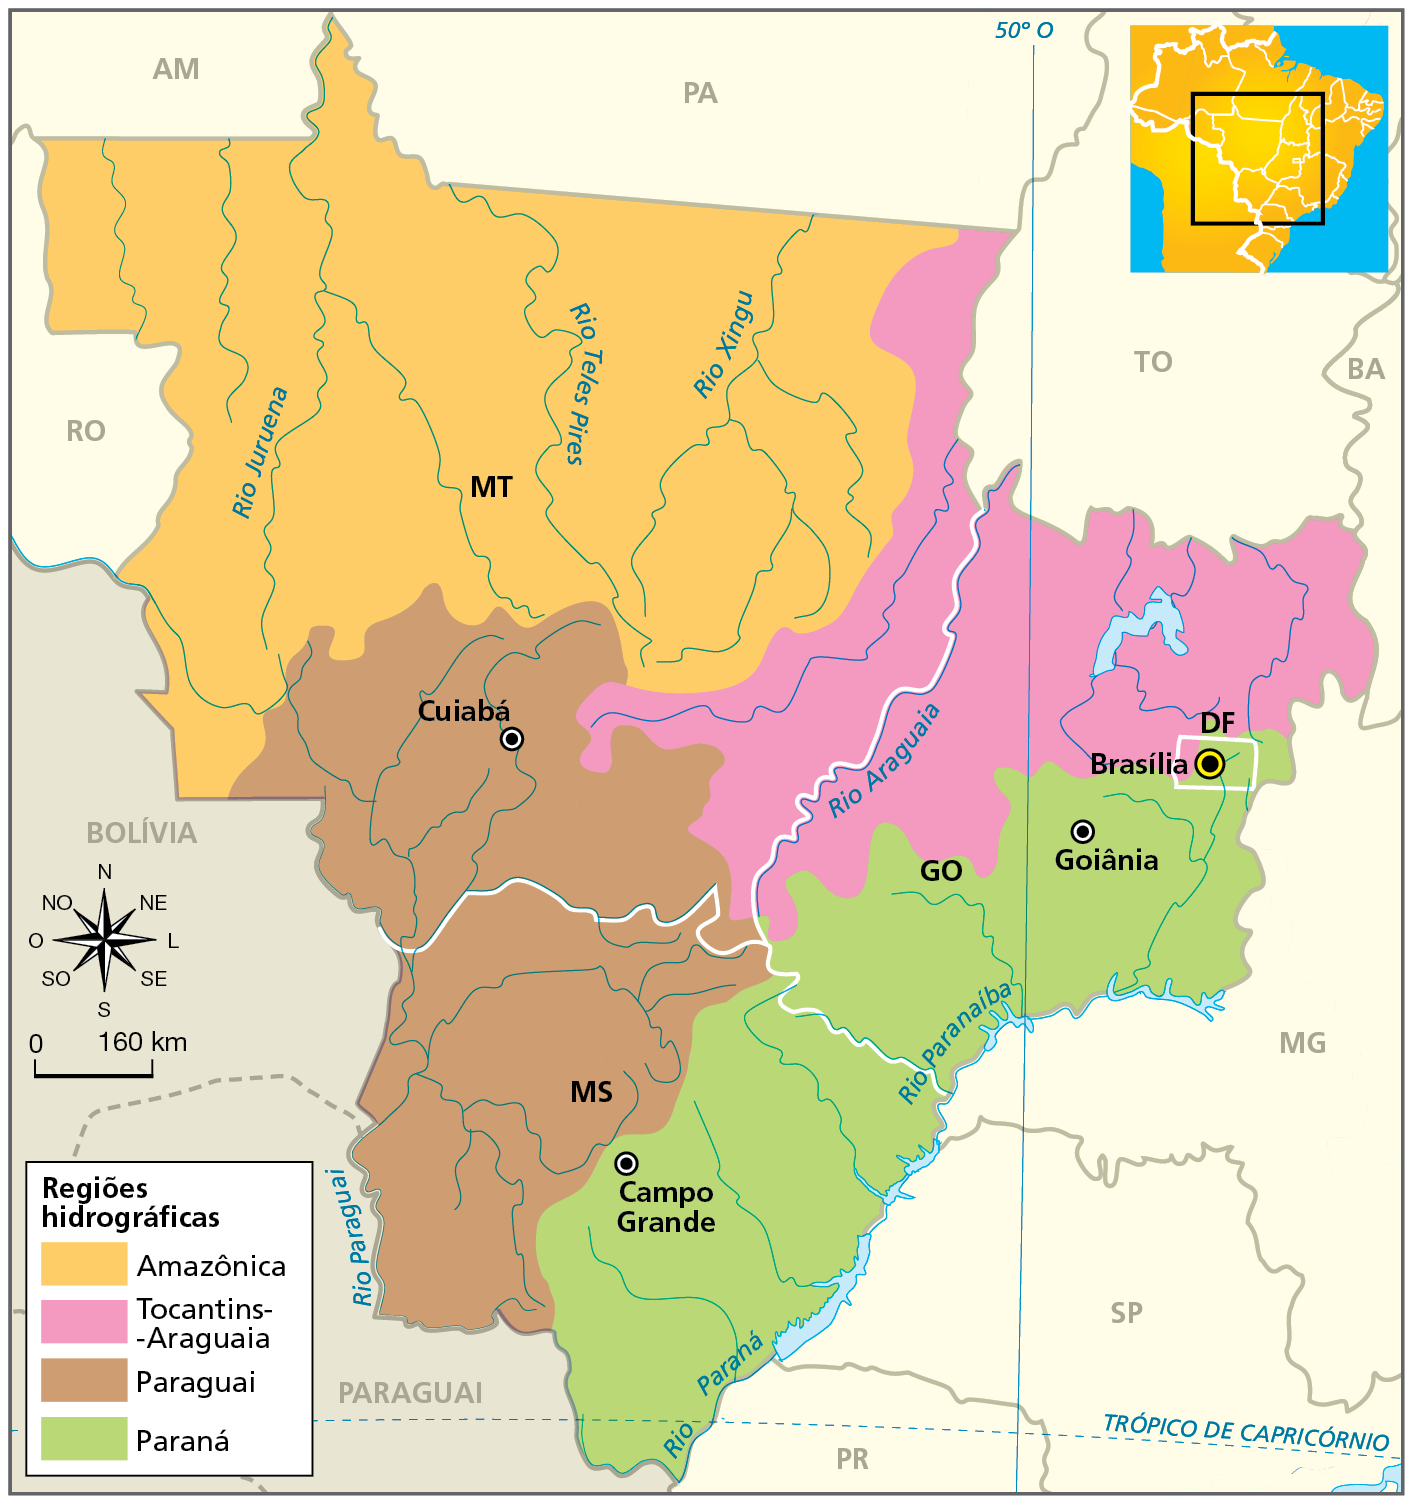 Mapa. Região Centro-Oeste: regiões hidrográficas.
Mapa com destaque para as regiões hidrográficas do Centro-Oeste. 
Região hidrográfica Amazônica: abrange todo o Mato Grosso, com exceção de faixas das porções sul e leste do estado.
Região hidrográfica Tocantins-Araguaia: abrange o leste de Mato Grosso e as porções oeste e norte de Goiás.
Região hidrográfica Paraguai: abrange o sul do Mato Grosso e o centro-oeste do Mato Grosso do Sul.
Região hidrográfica Paraná: abrange o sul e o leste de Goiás e o centro-leste do Mato Grosso do Sul, passando pelo Distrito Federal.
Na parte inferior, rosa dos ventos e escala de 0 a 160 quilômetros.